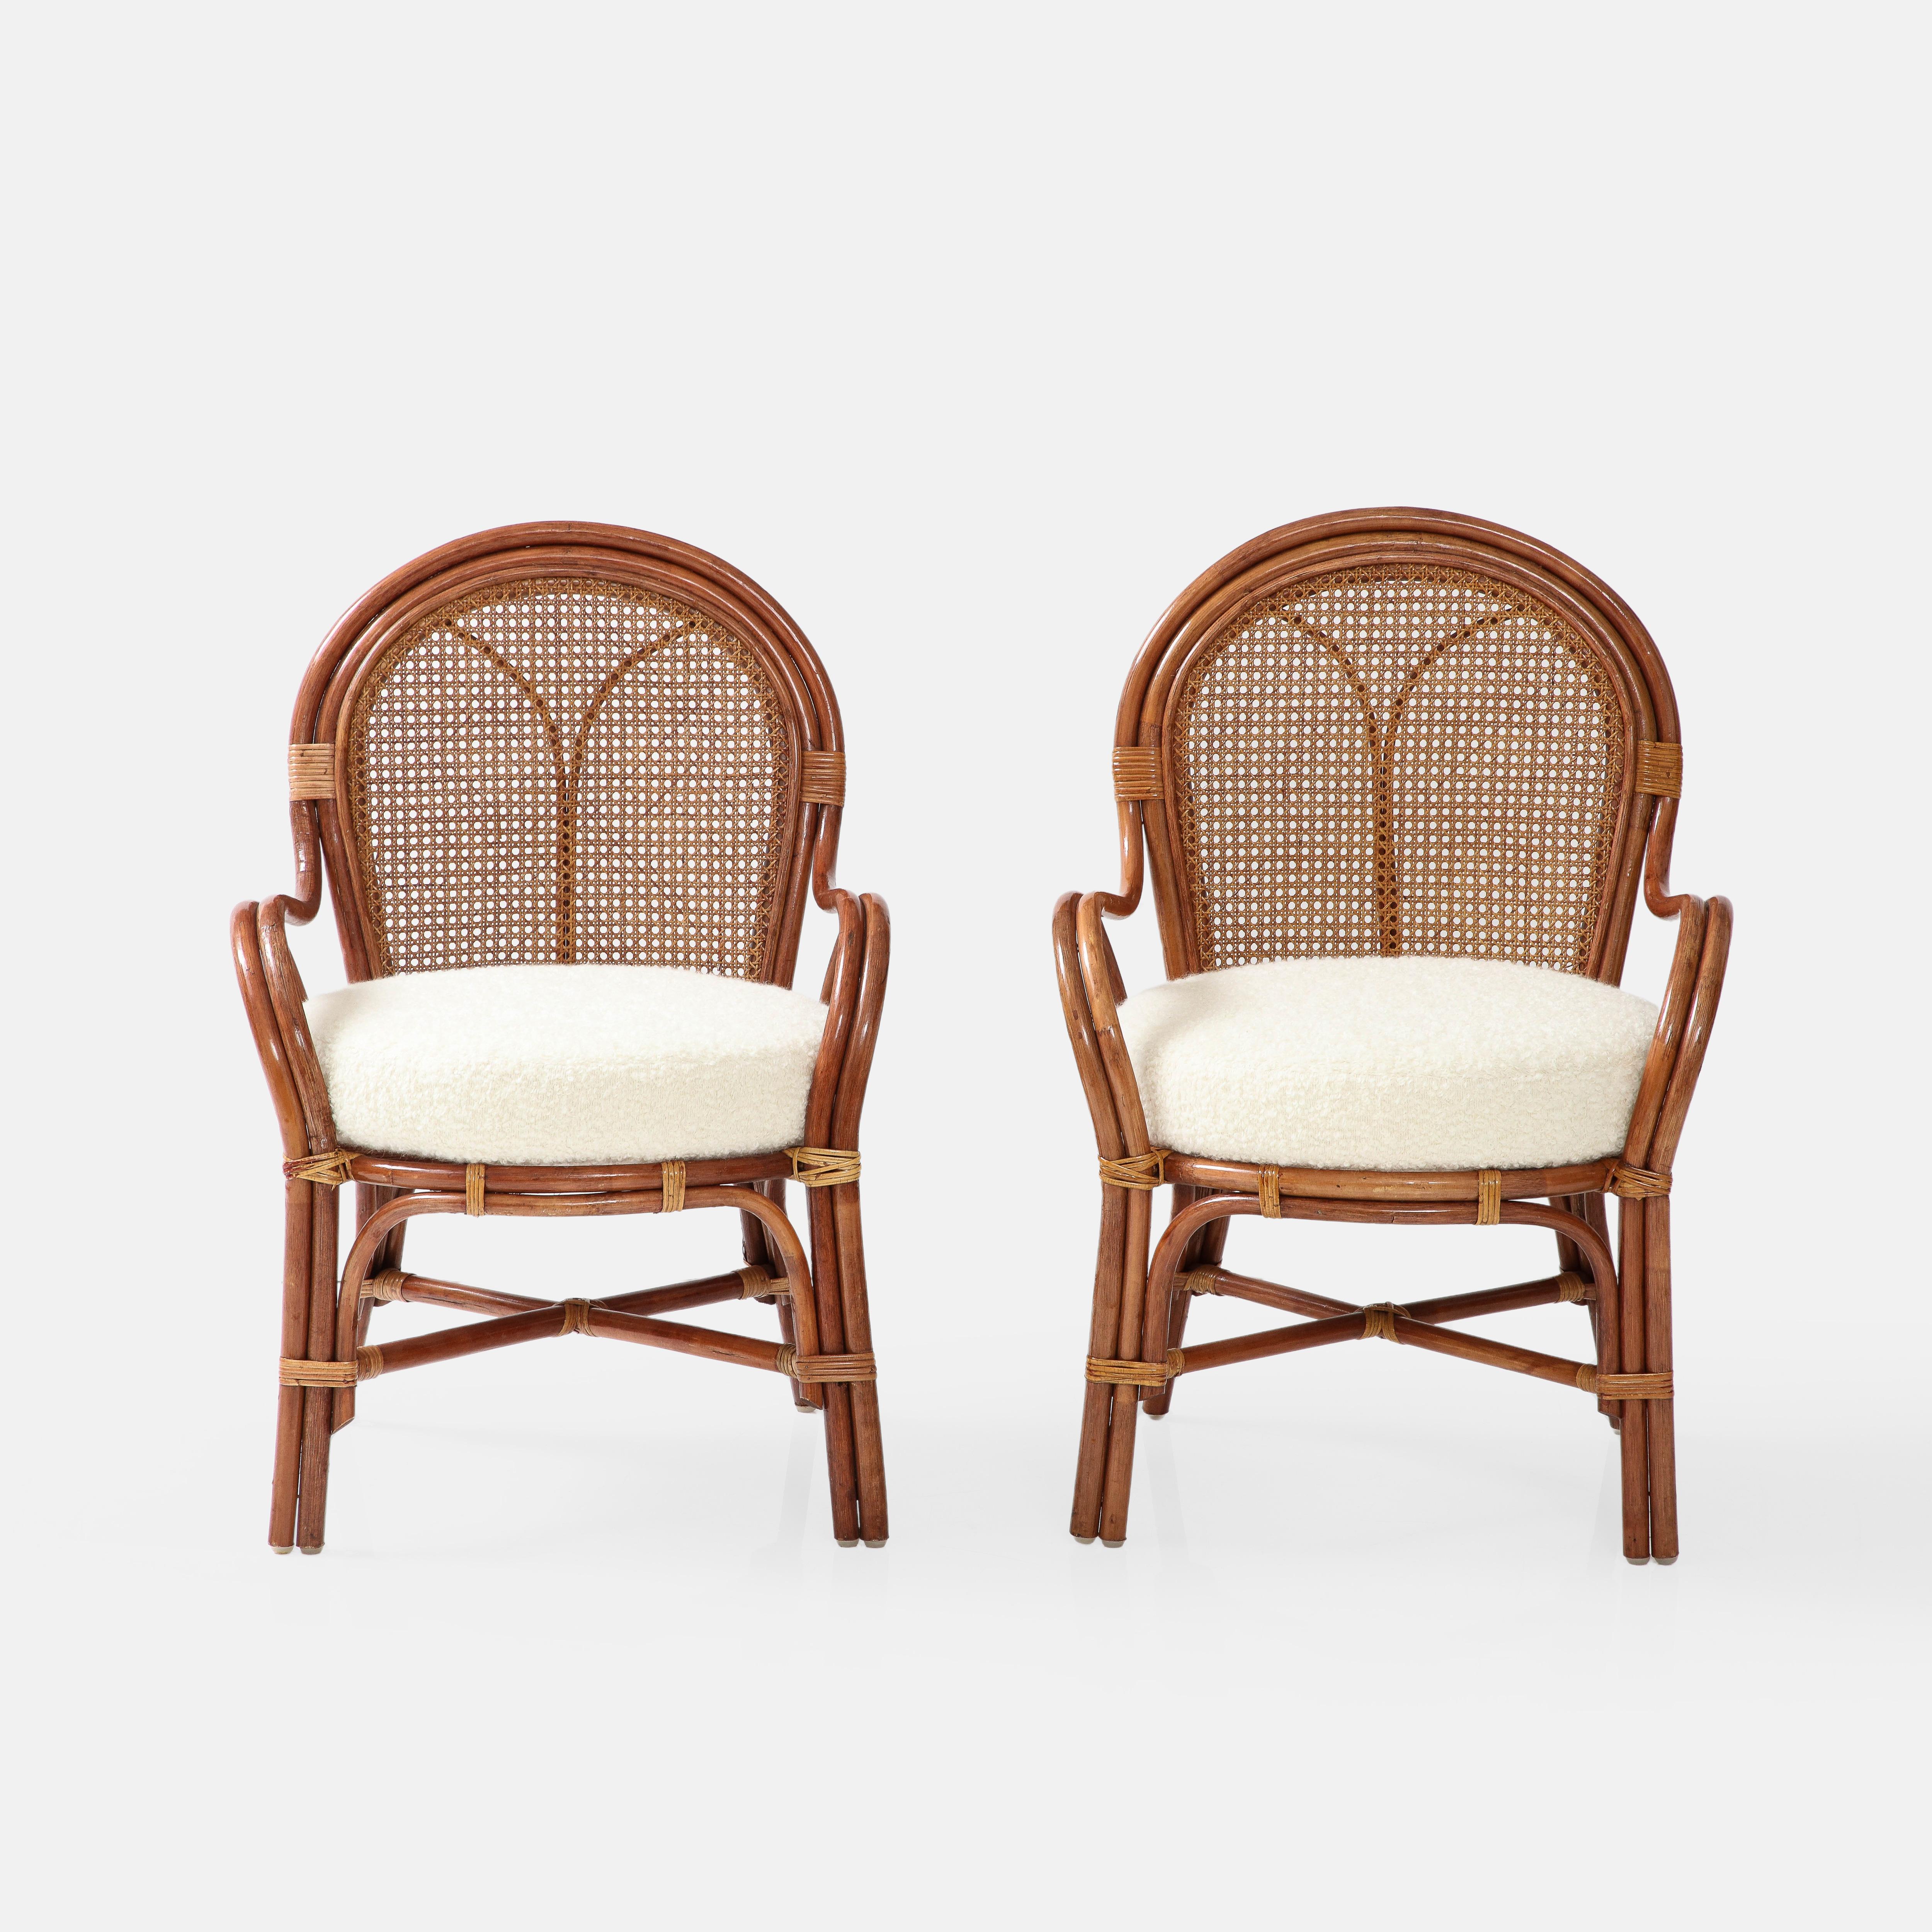 Italienisches Paar Bambus- und Rattansessel aus den 1950er Jahren mit Rückenlehnen aus Wiener Strohrohr und elfenbeinfarbenen Sitzkissen aus Bouclé.  Diese selten gesehenen handgefertigten Vintage-Sessel strahlen Eleganz und Charme in all den